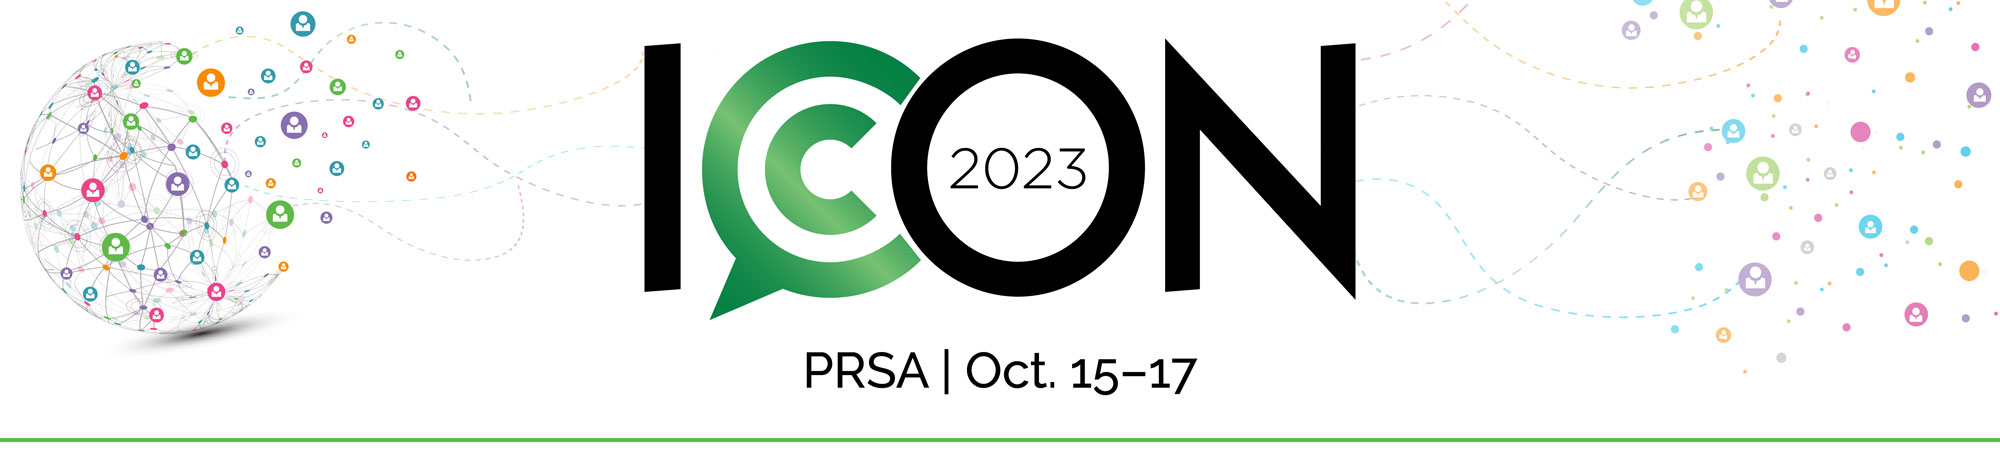 PRSA ICON 2023 Conference